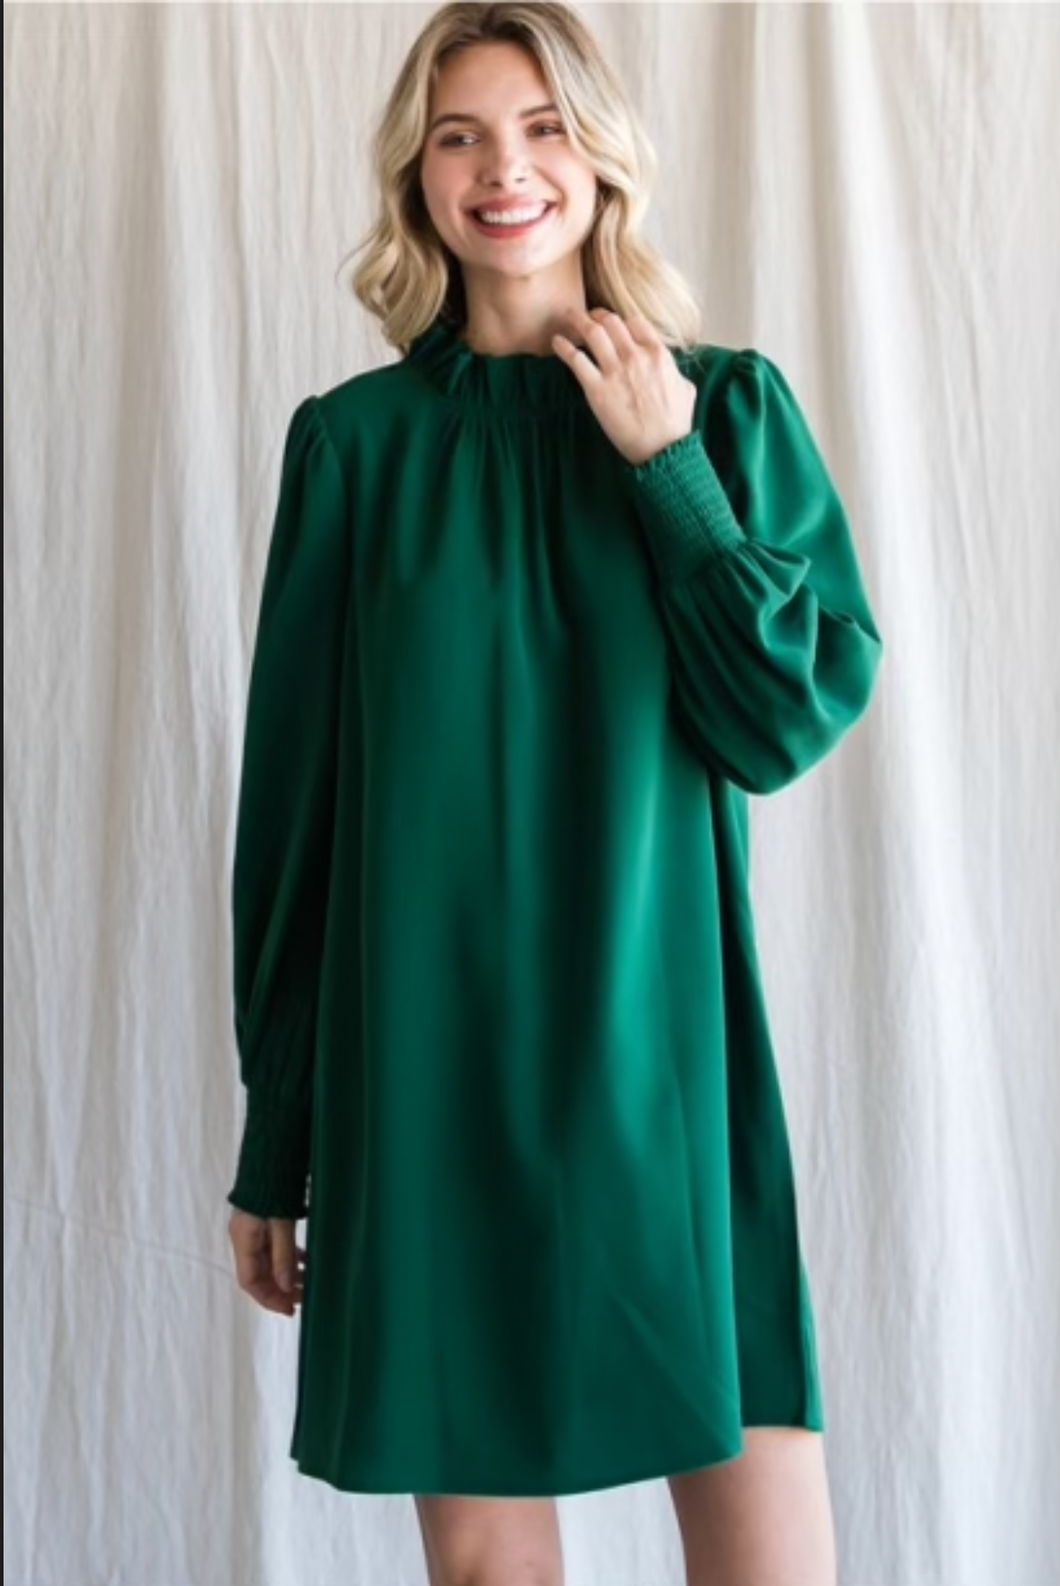 Jodifl Green Dress